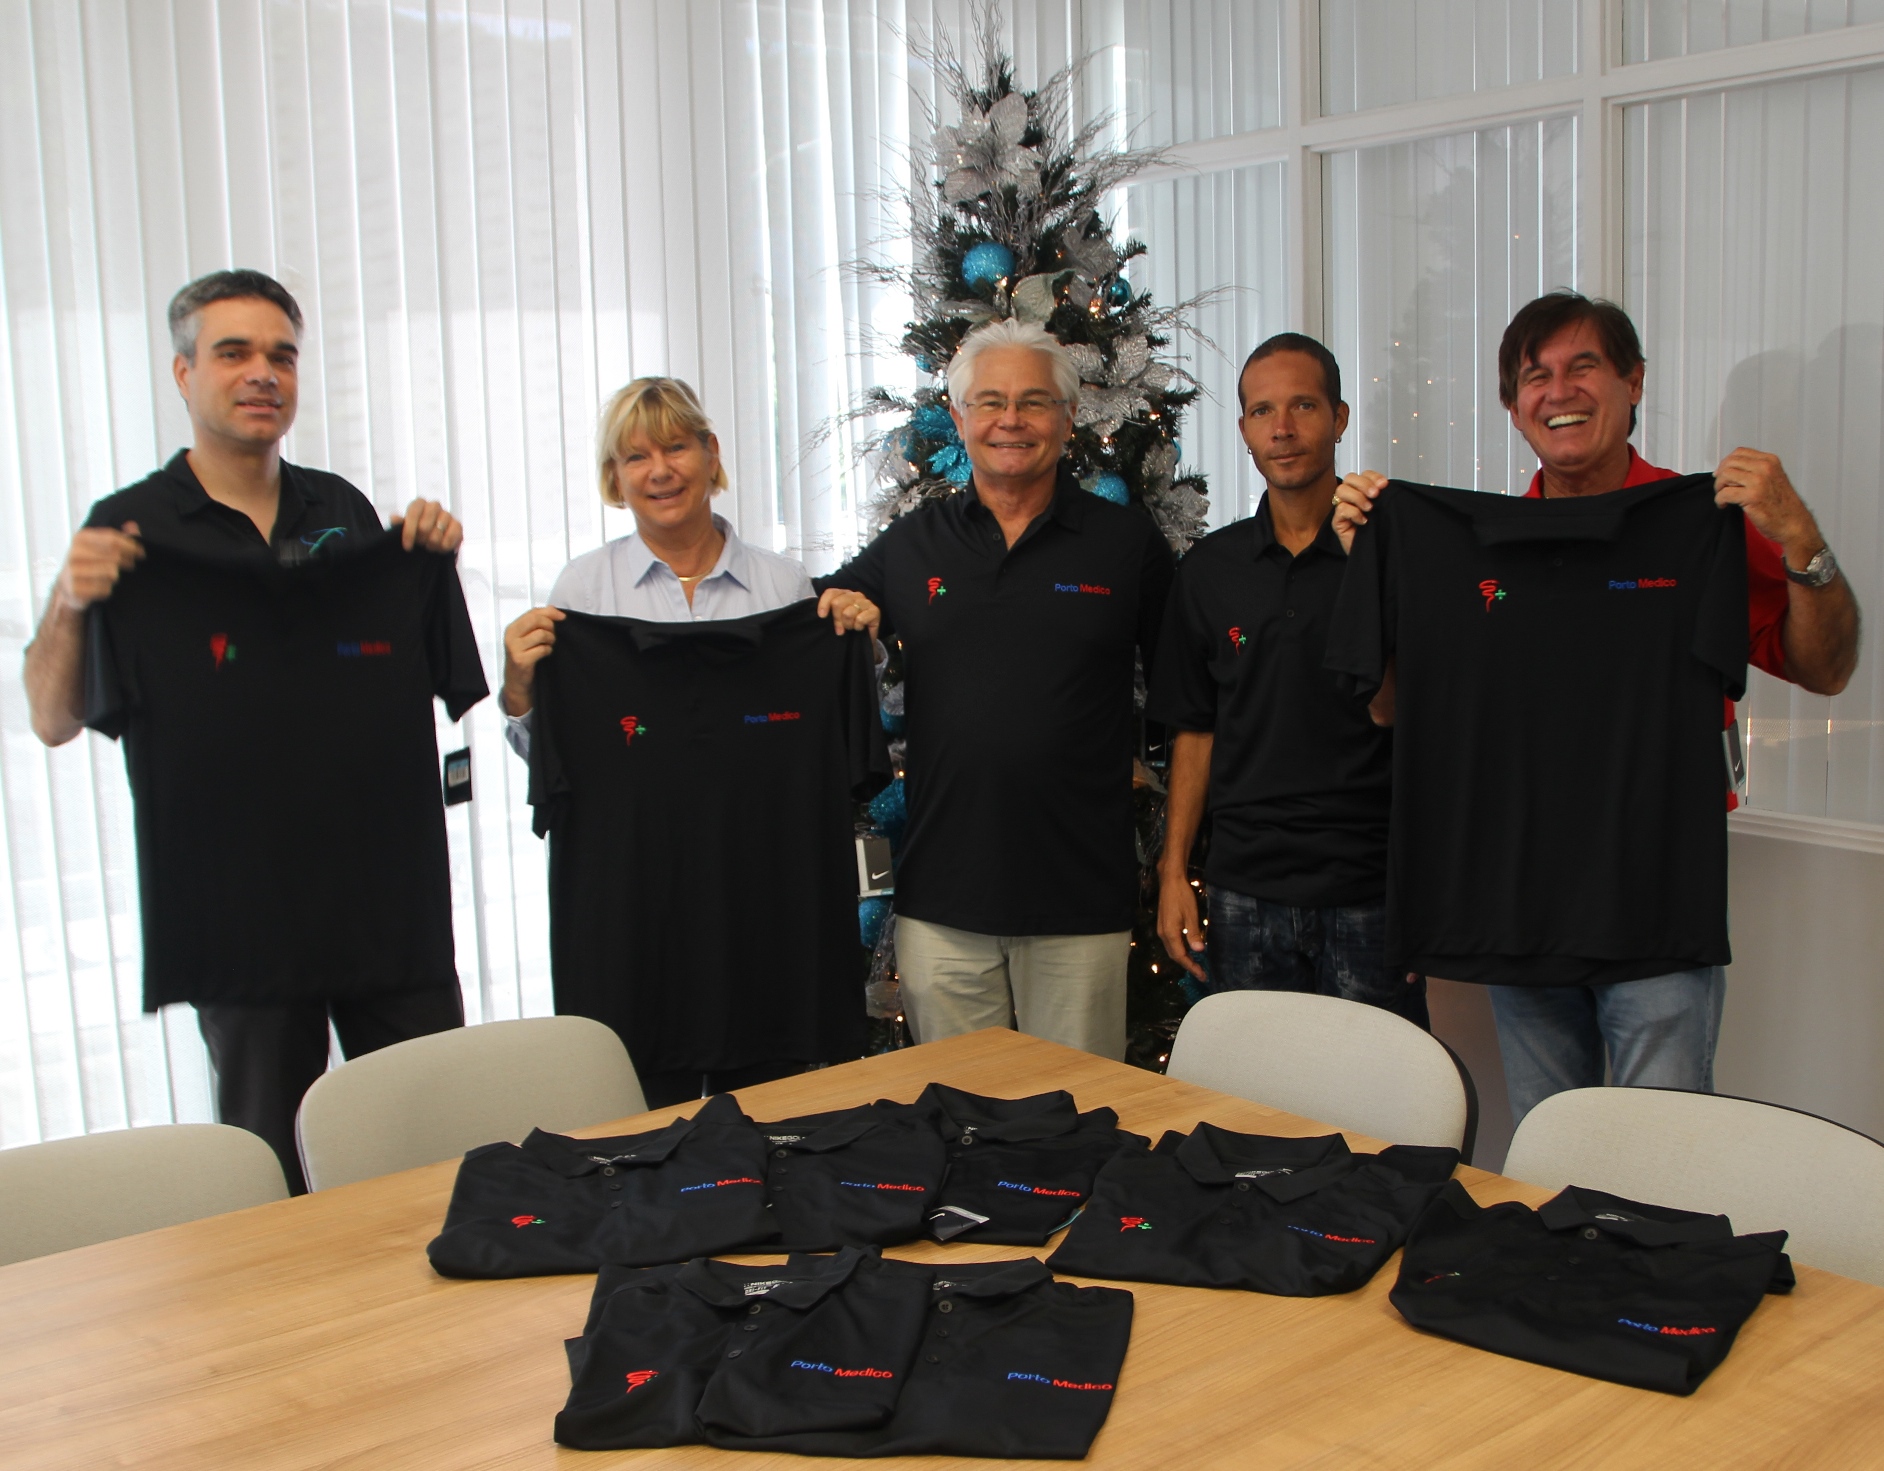 Porto Medico receives 25 company shirts from CAP